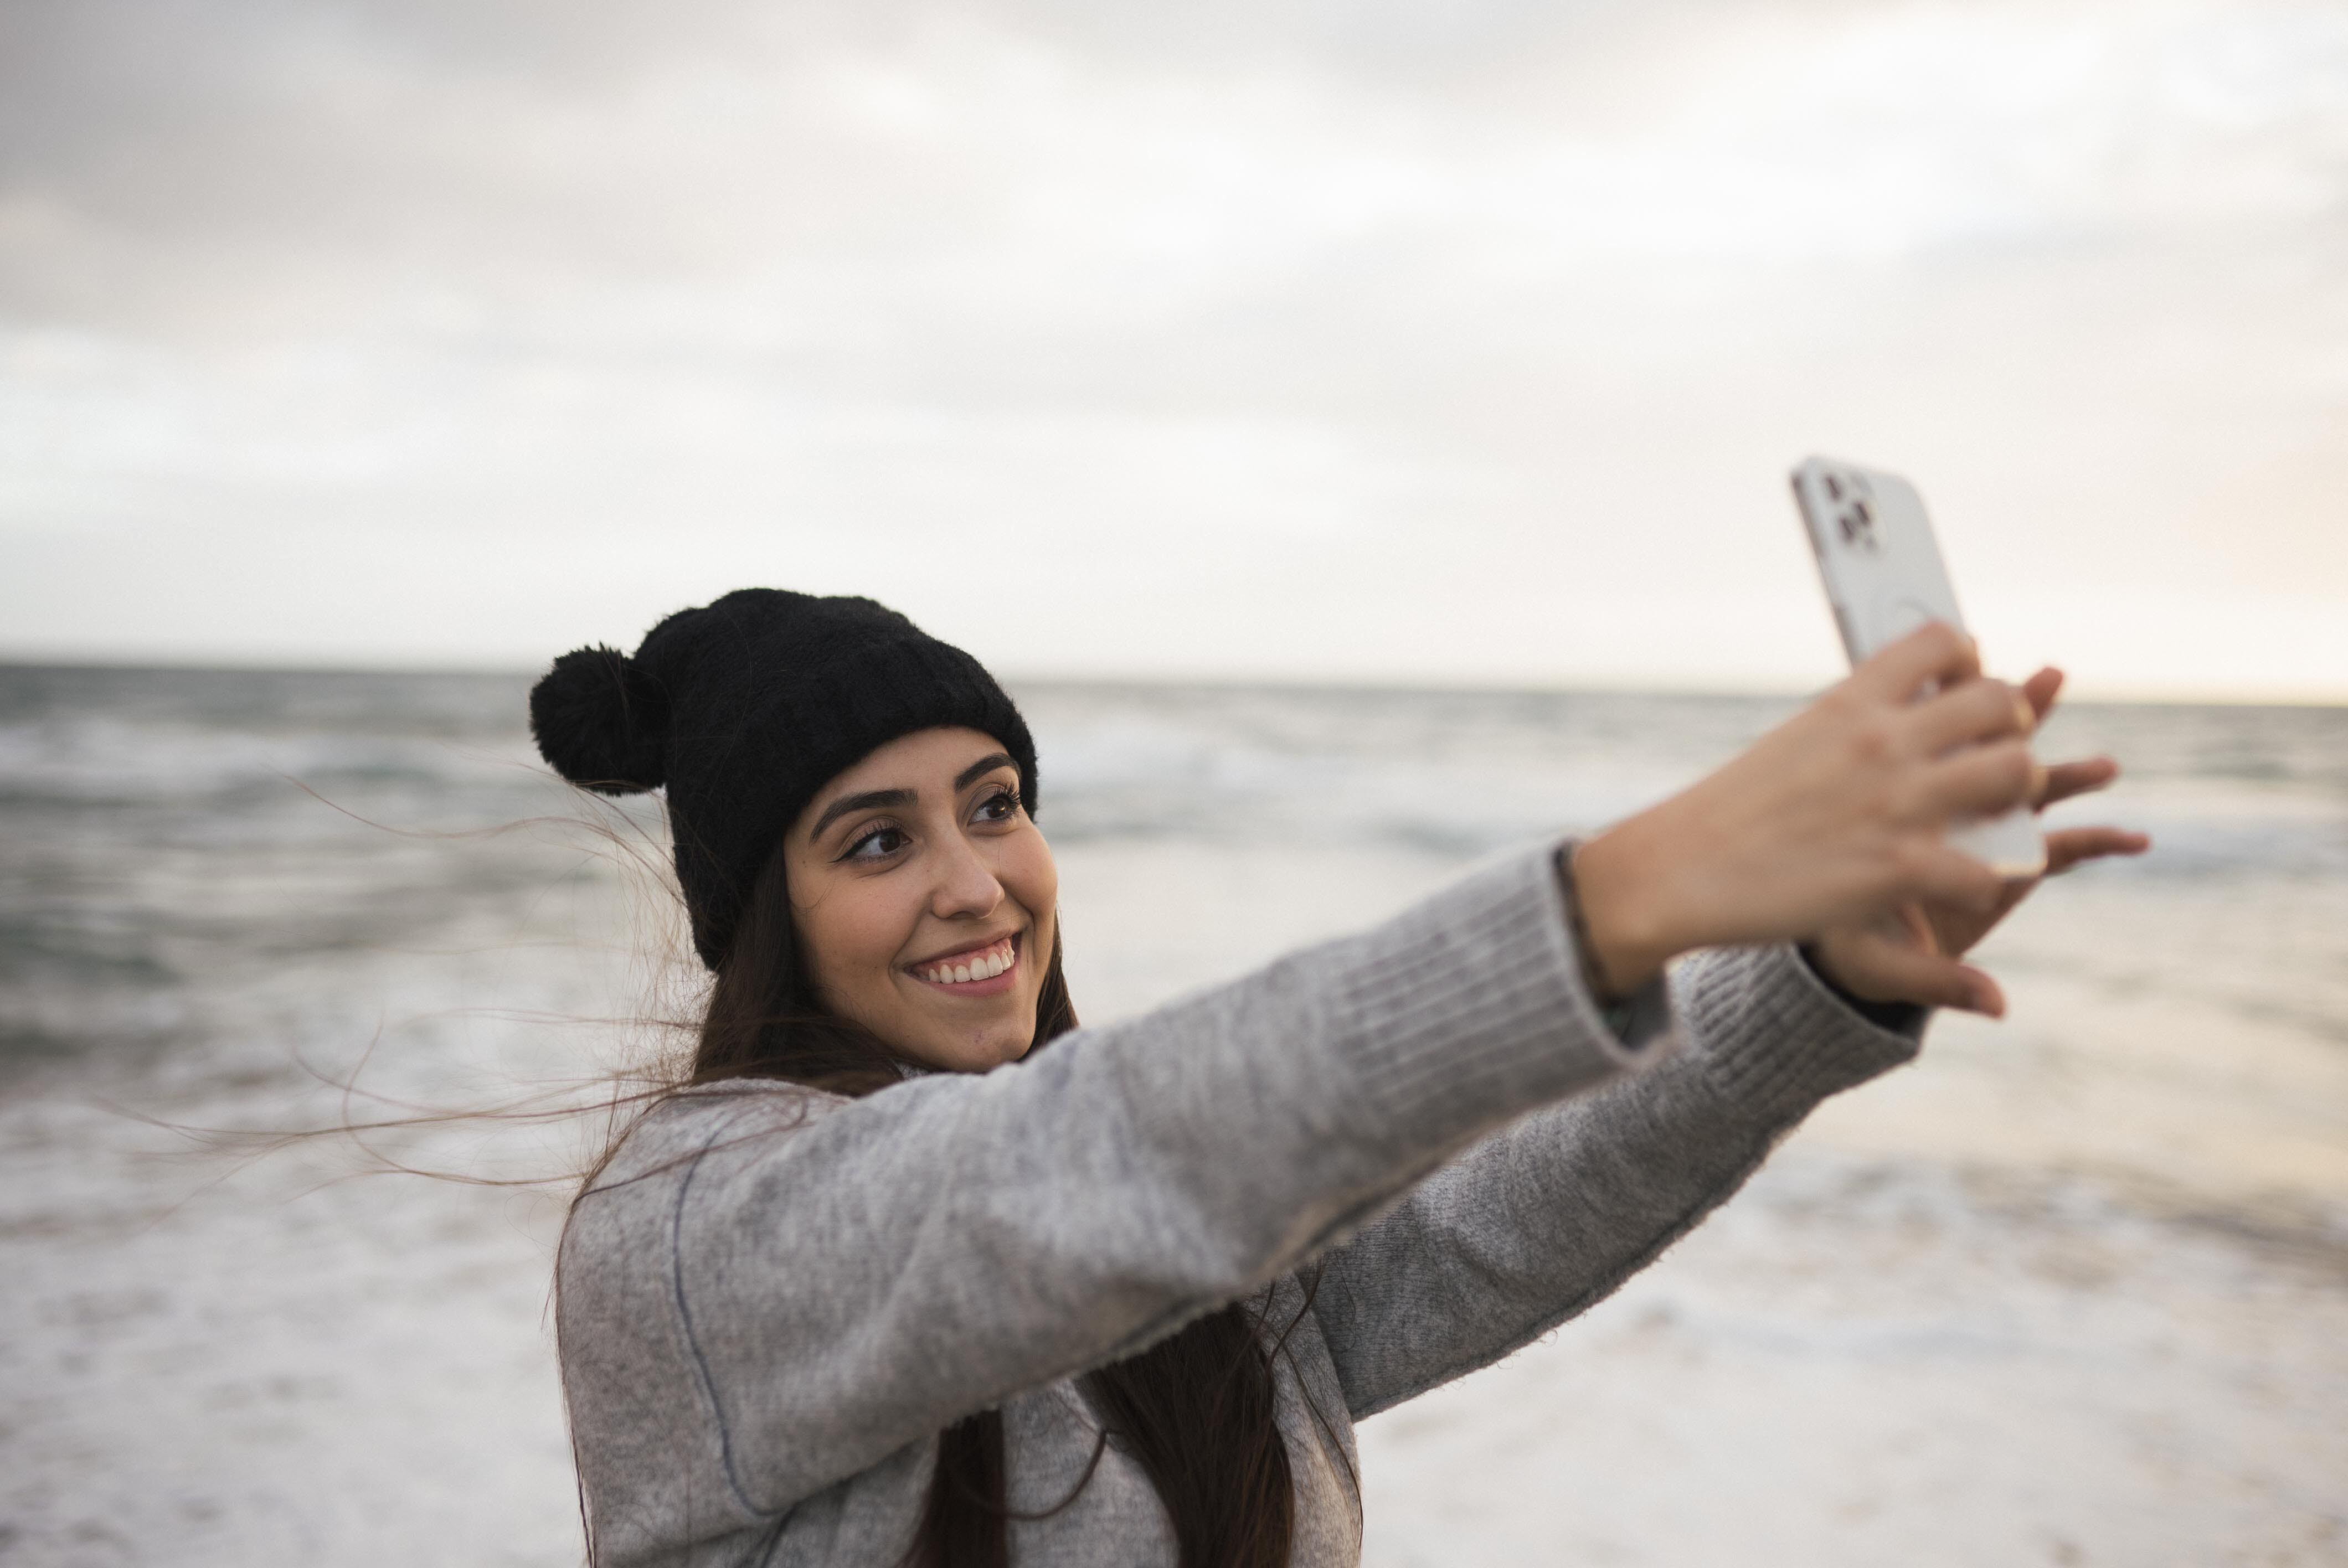 Al momento de sacar una selfie es importante tener en cuenta algunos trucos, como elevar un poco el móvil. (Foto: Pexel)